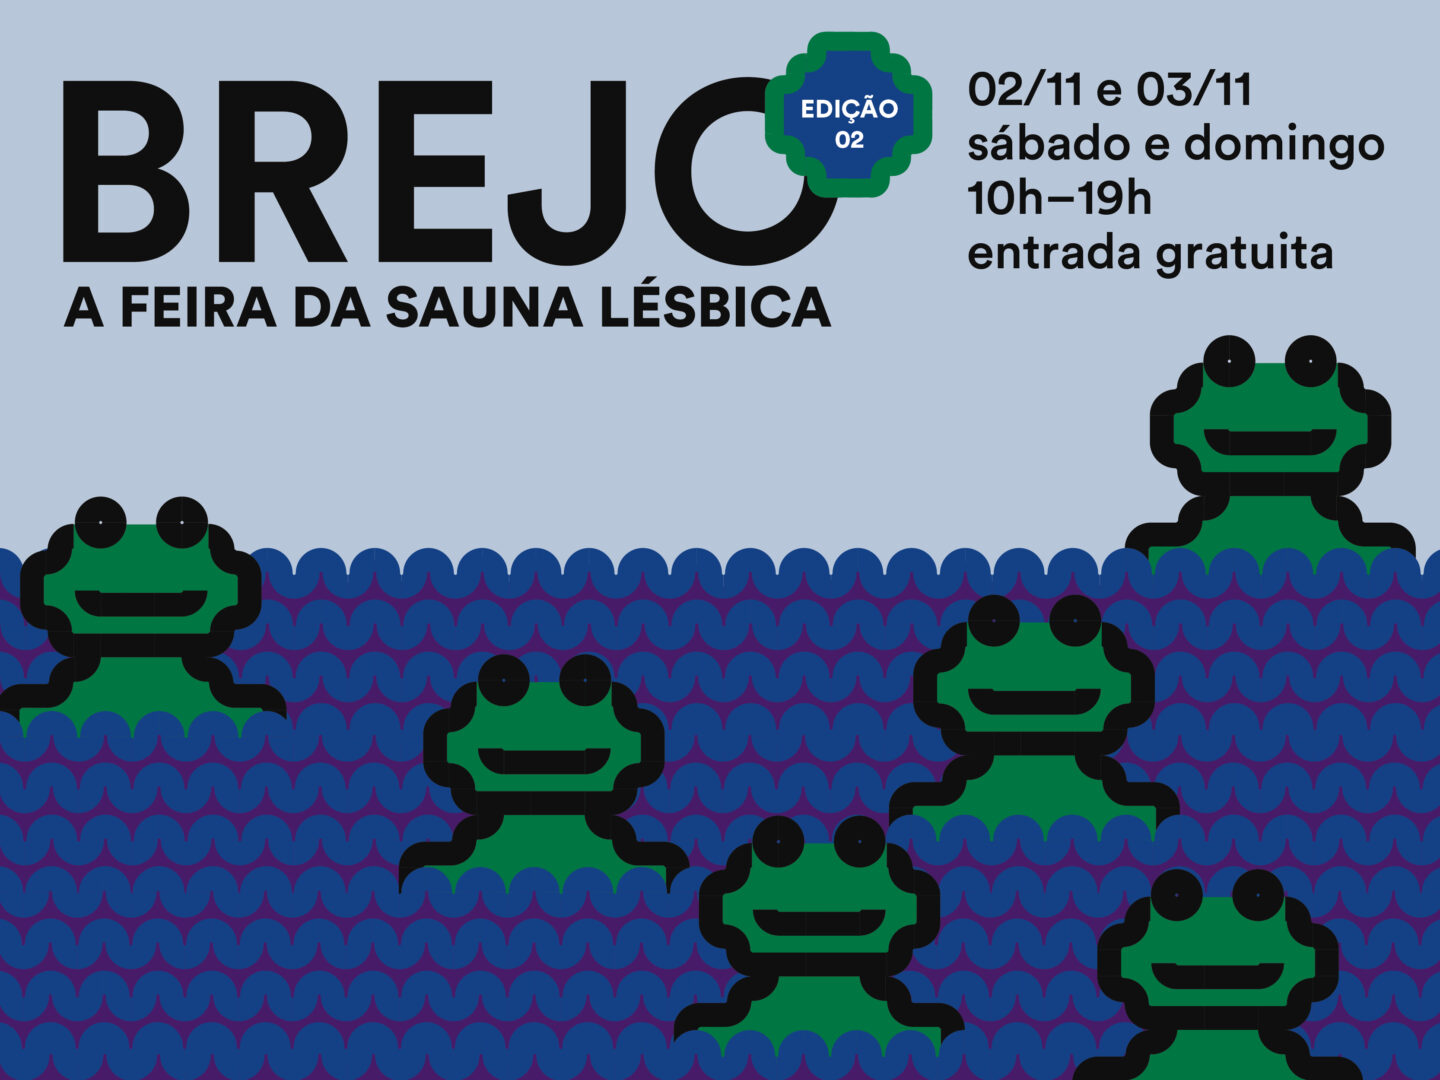 Brejo, the Sauna Lésbica fair